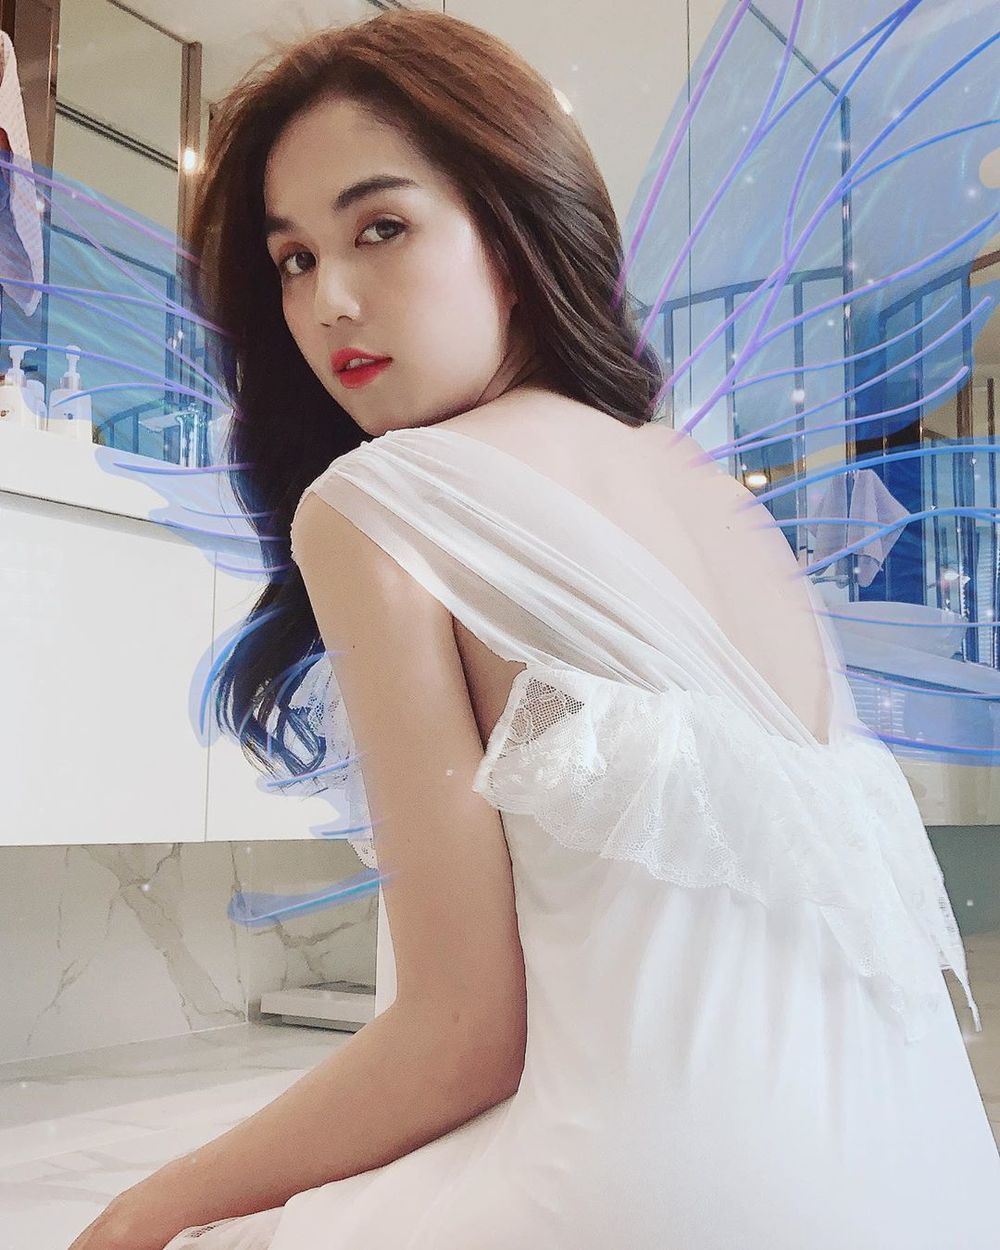  
Ngọc Trinh sau hình ảnh "Thu Hà" xuất hiện trong MV của Chi Pu đã trở lại đơn giản, nhẹ nhàng với thiết kế tông trắng. Góc chụp khoe trọn phần lưng trần và vai gầy của người đẹp sinh năm 1989. (Ảnh: Instagram nhân vật)